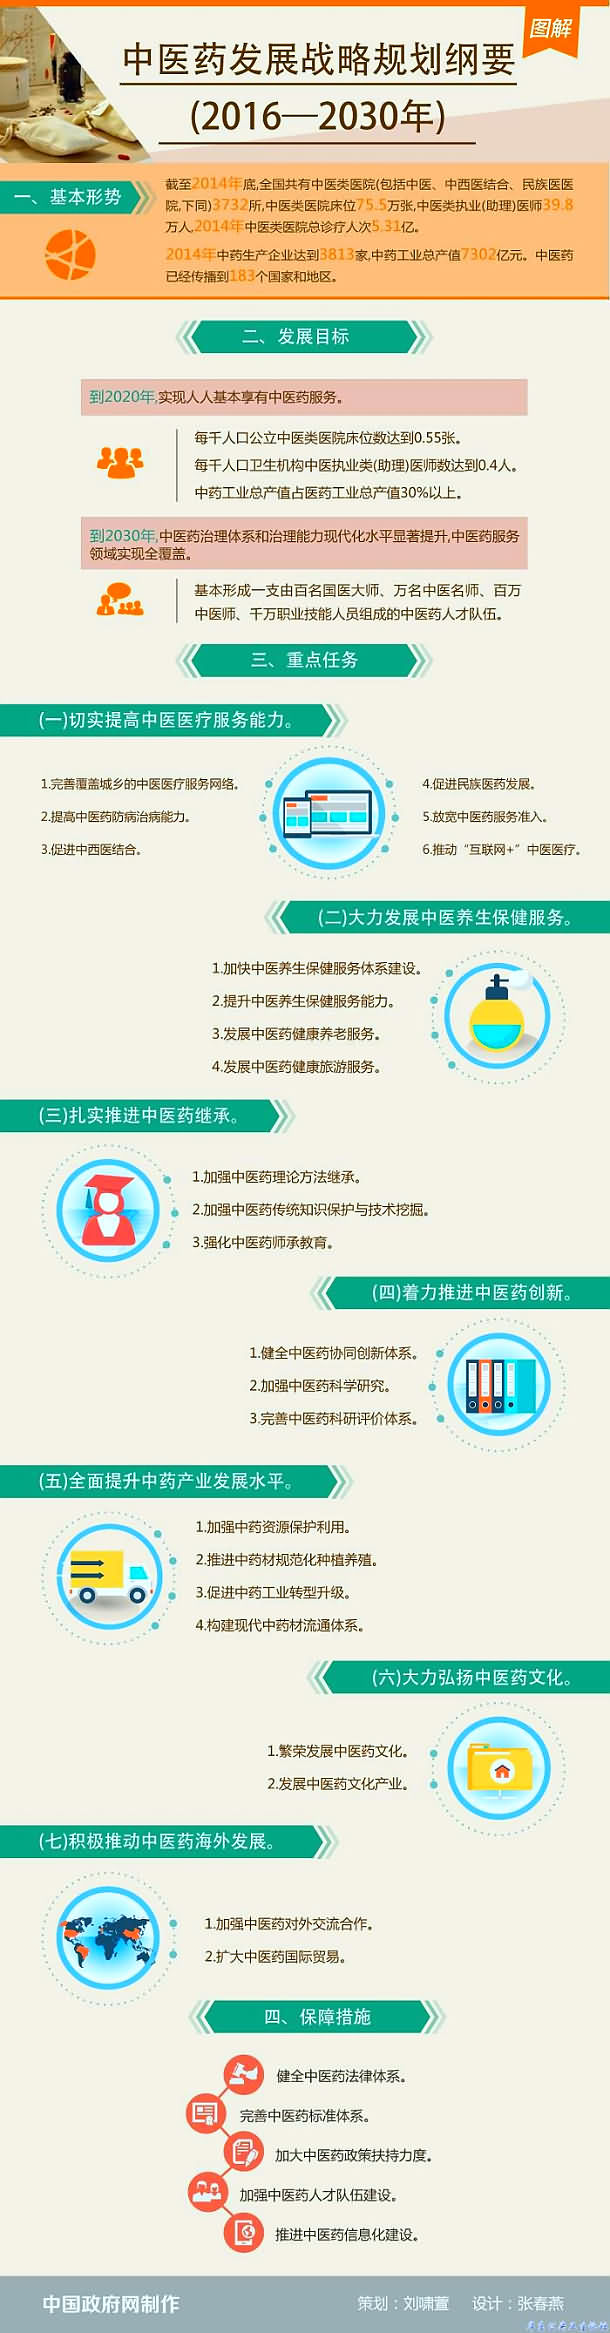 中医药发展战略规划纲要图解（2016—2030年）